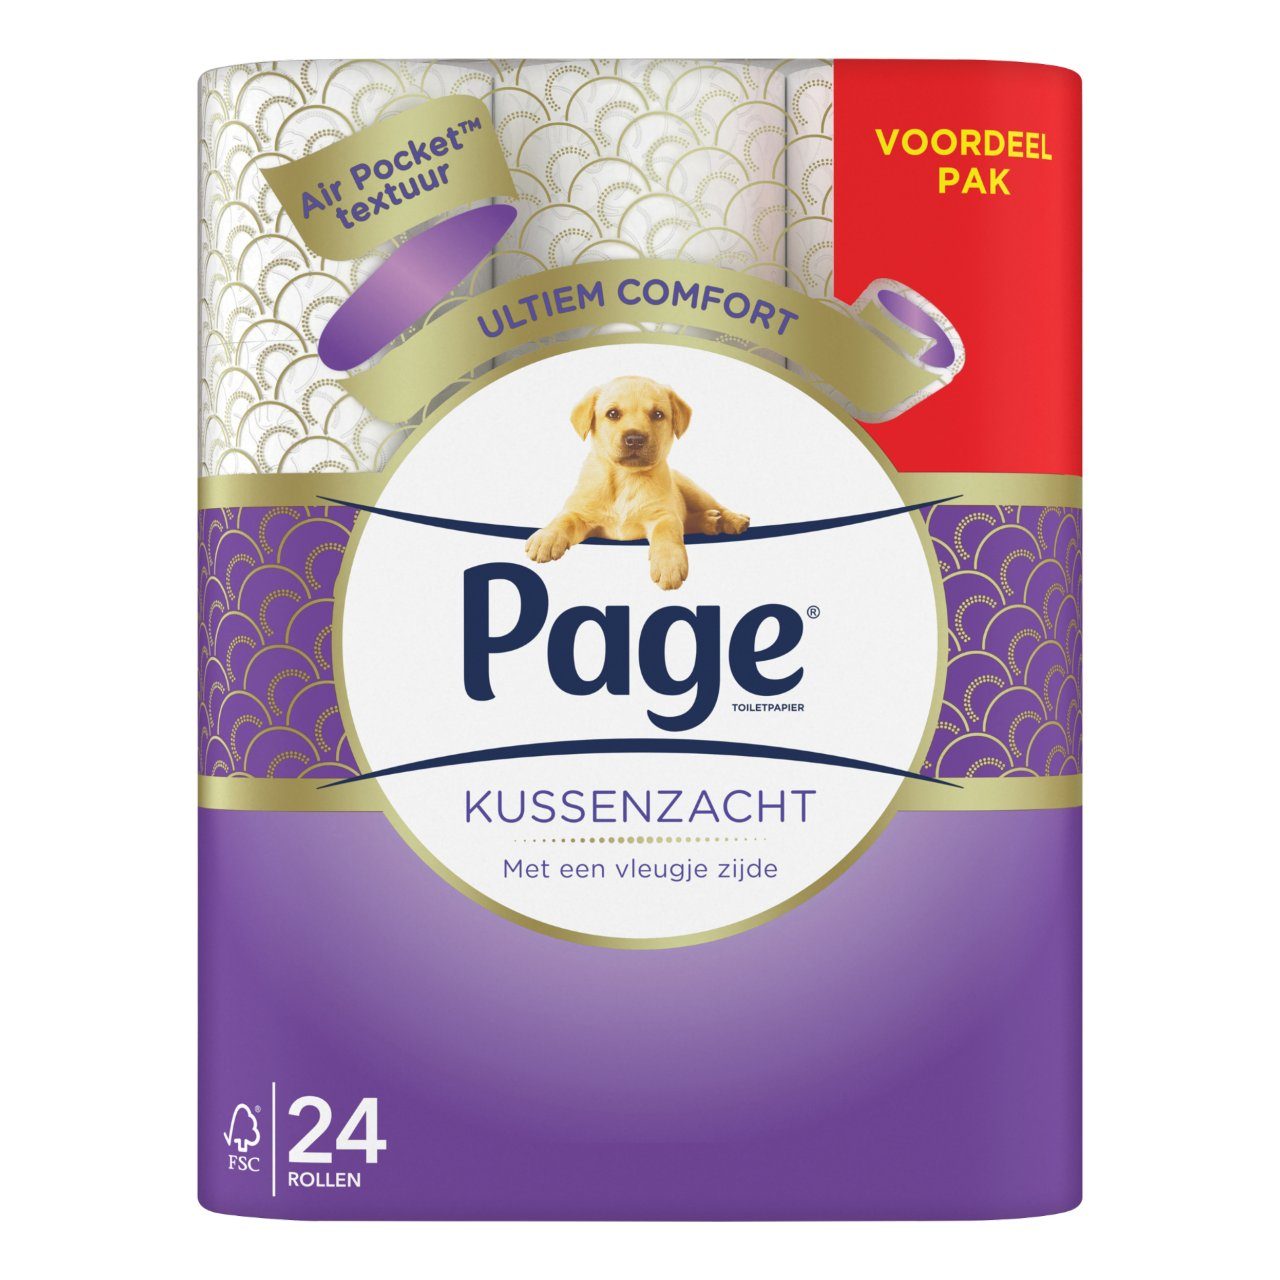 aantrekkelijk Accor koppel Page Toiletpapier kussenzacht Pak 24 rollen | Sligro.nl